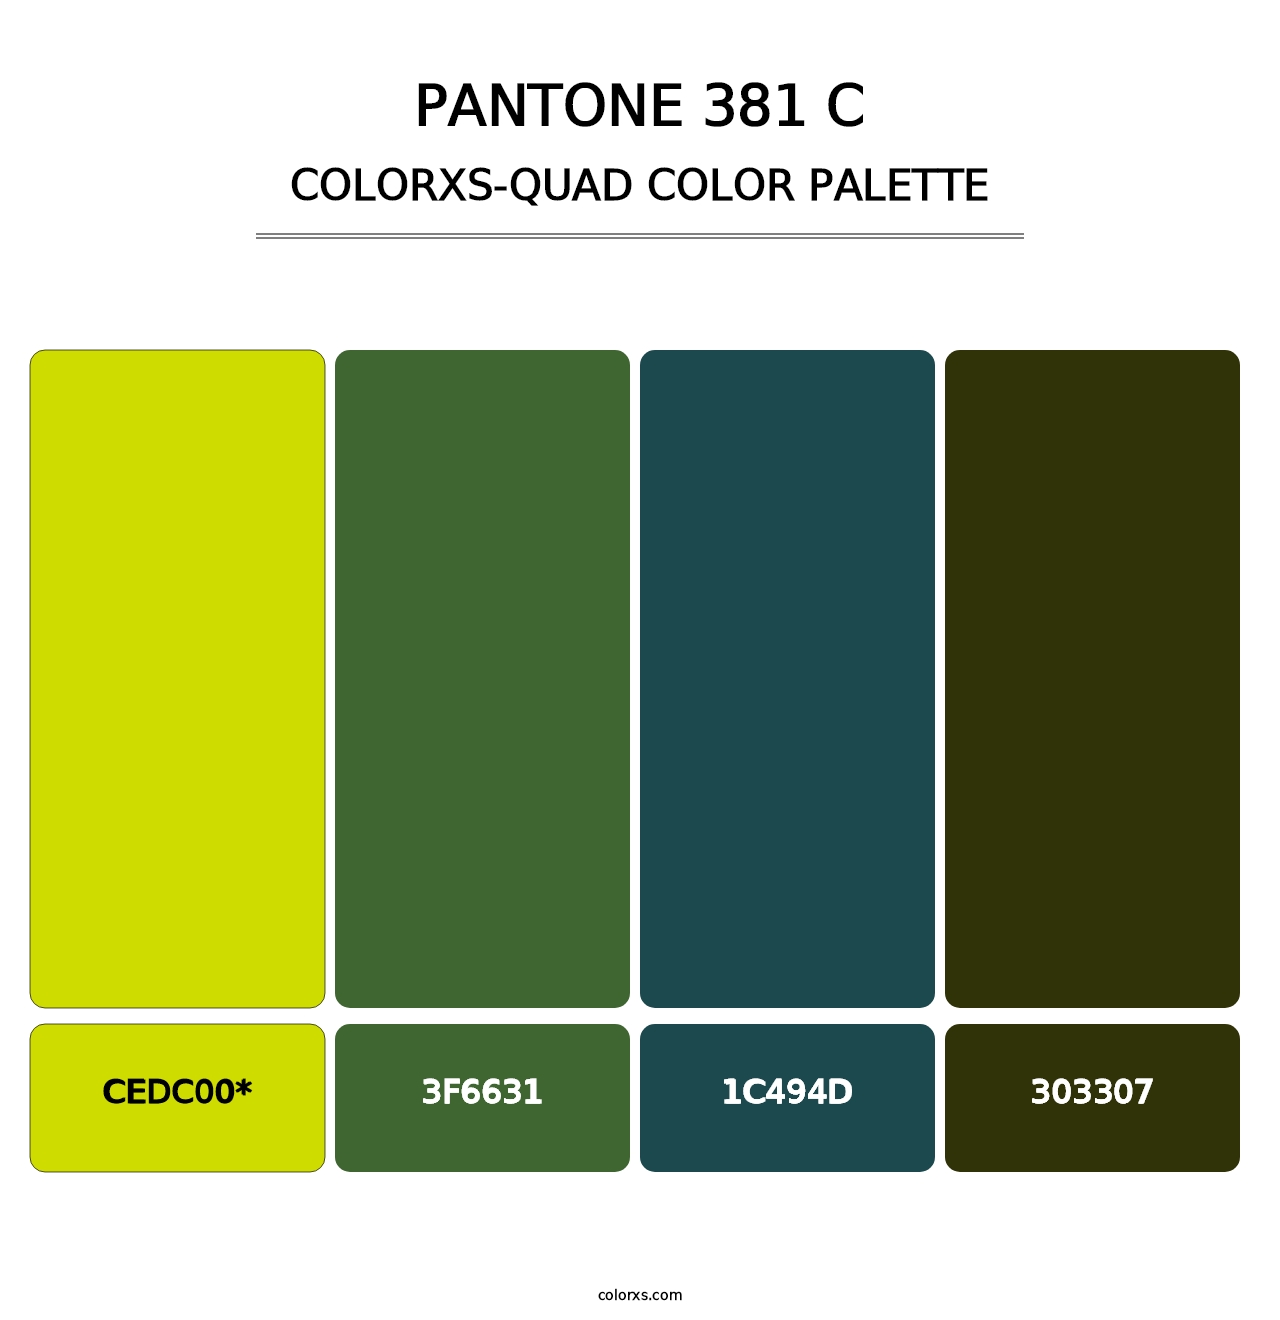 PANTONE 381 C - Colorxs Quad Palette